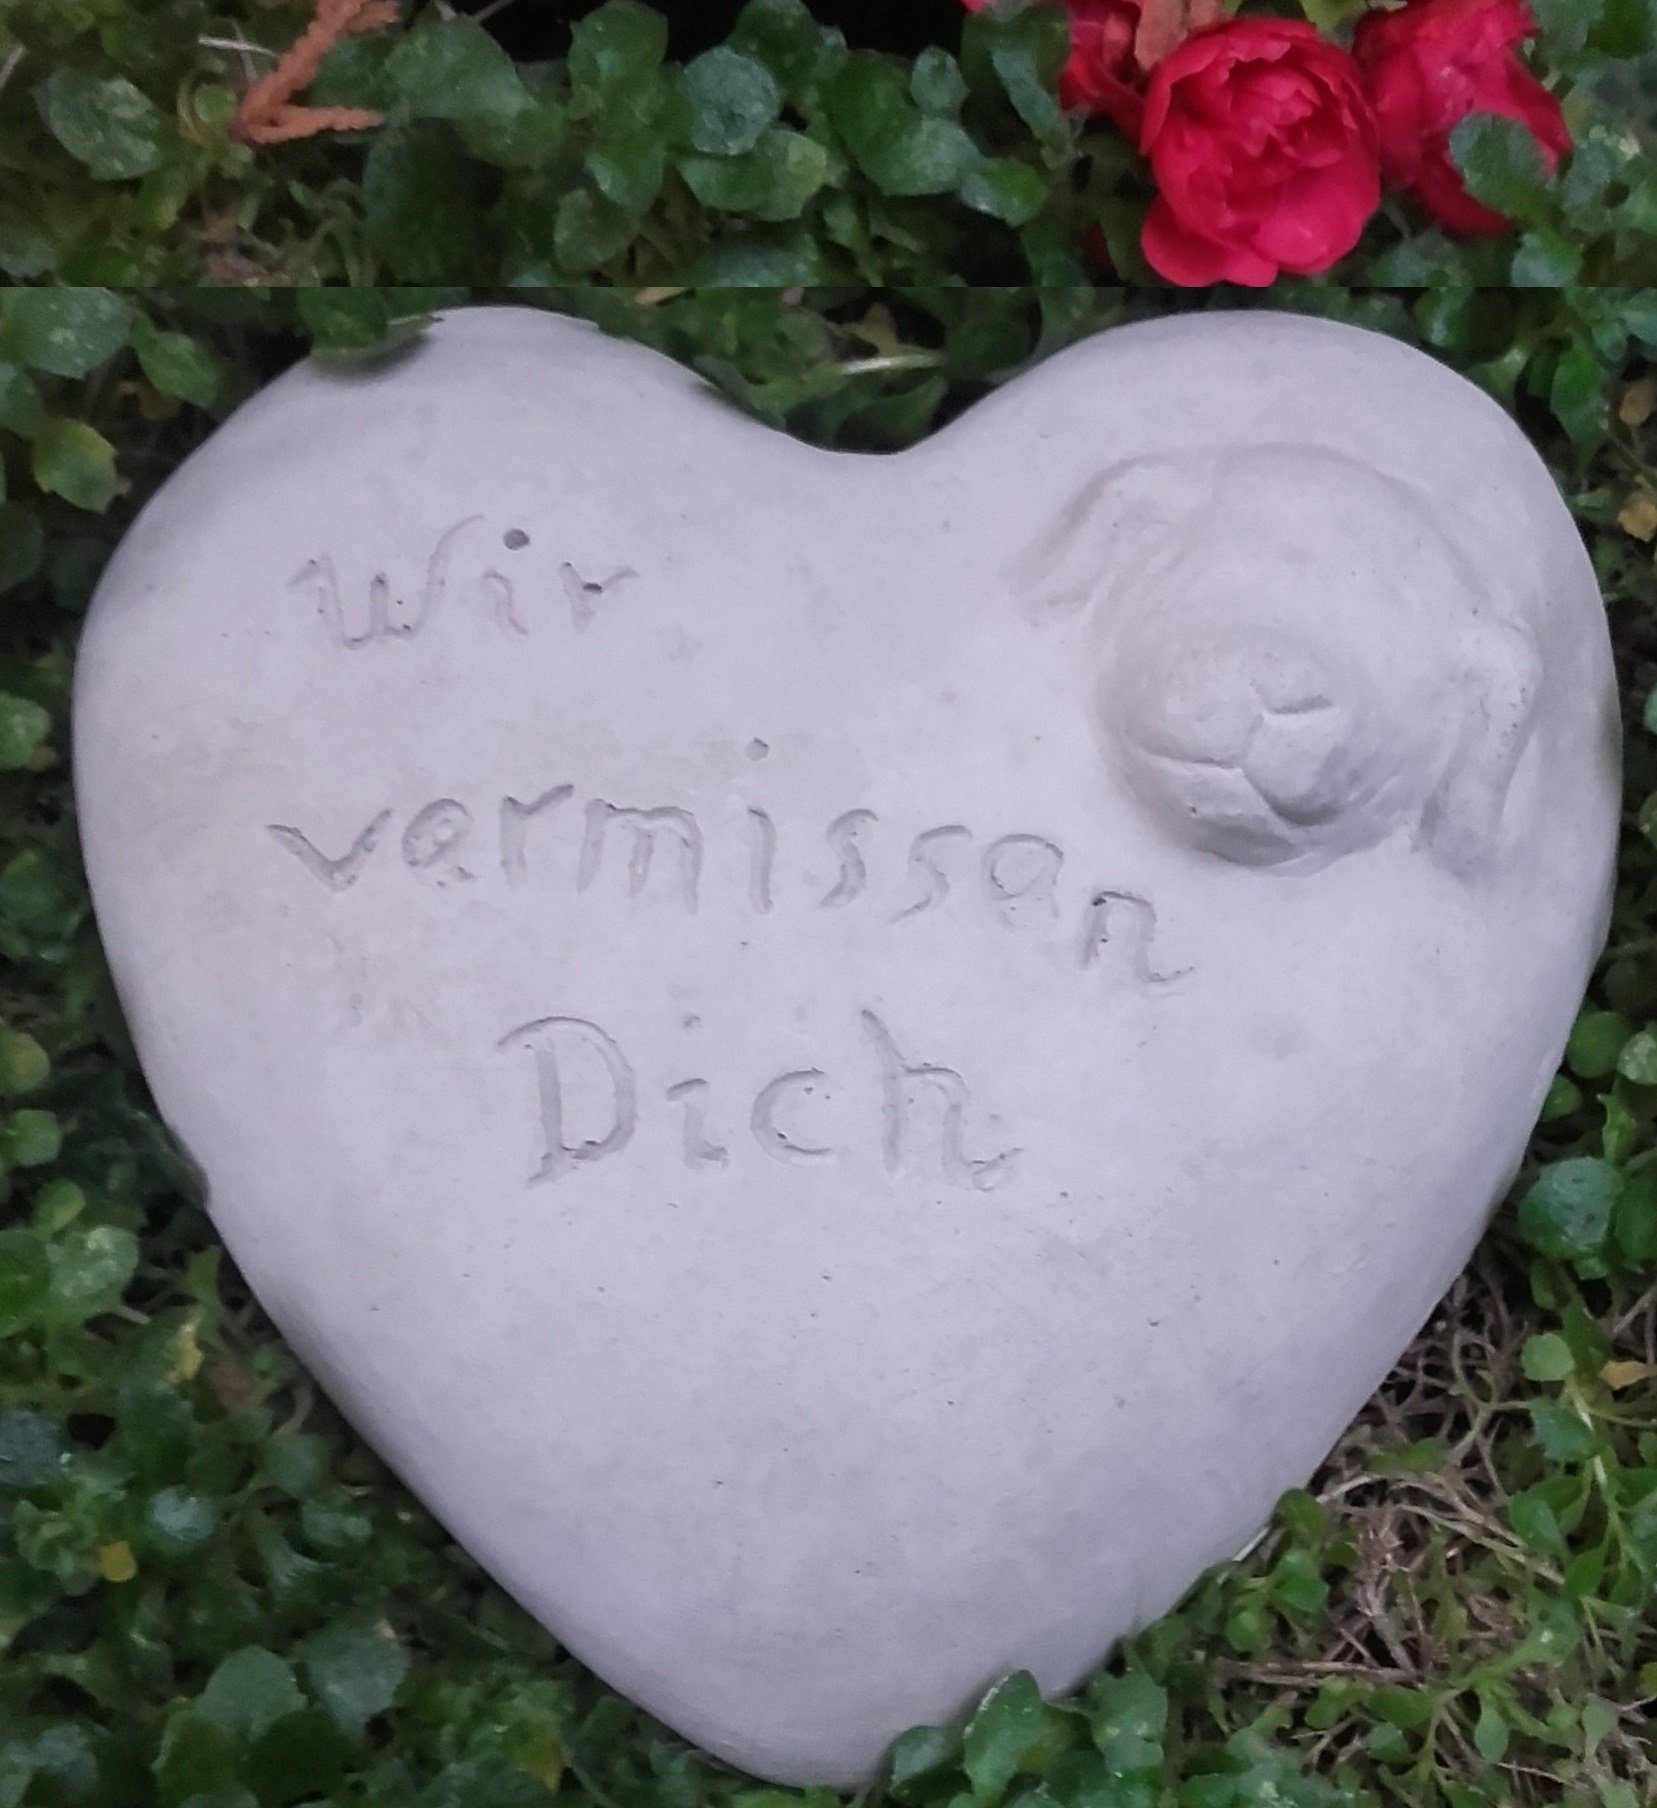 Gartenfigur "Wir Spruch vermissen Radami mit Grabherz Dich" Hund